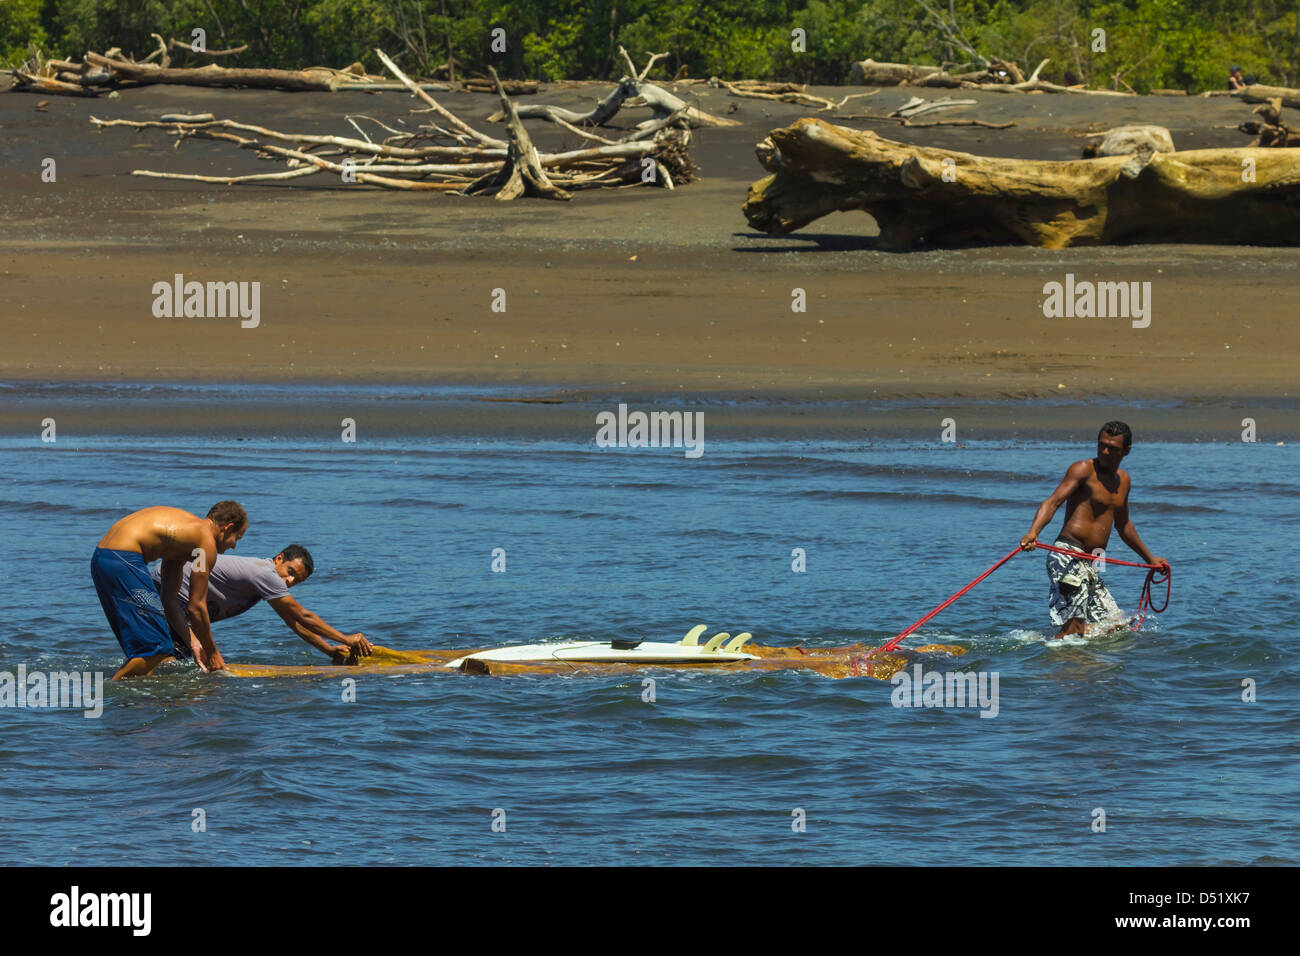 Les hommes locaux & surfer réunissant un grand morceau de bois flotté jusqu'au fleuve, Nosara Playa Nosara, Nosara, Province de Guanacaste, Costa Rica Banque D'Images